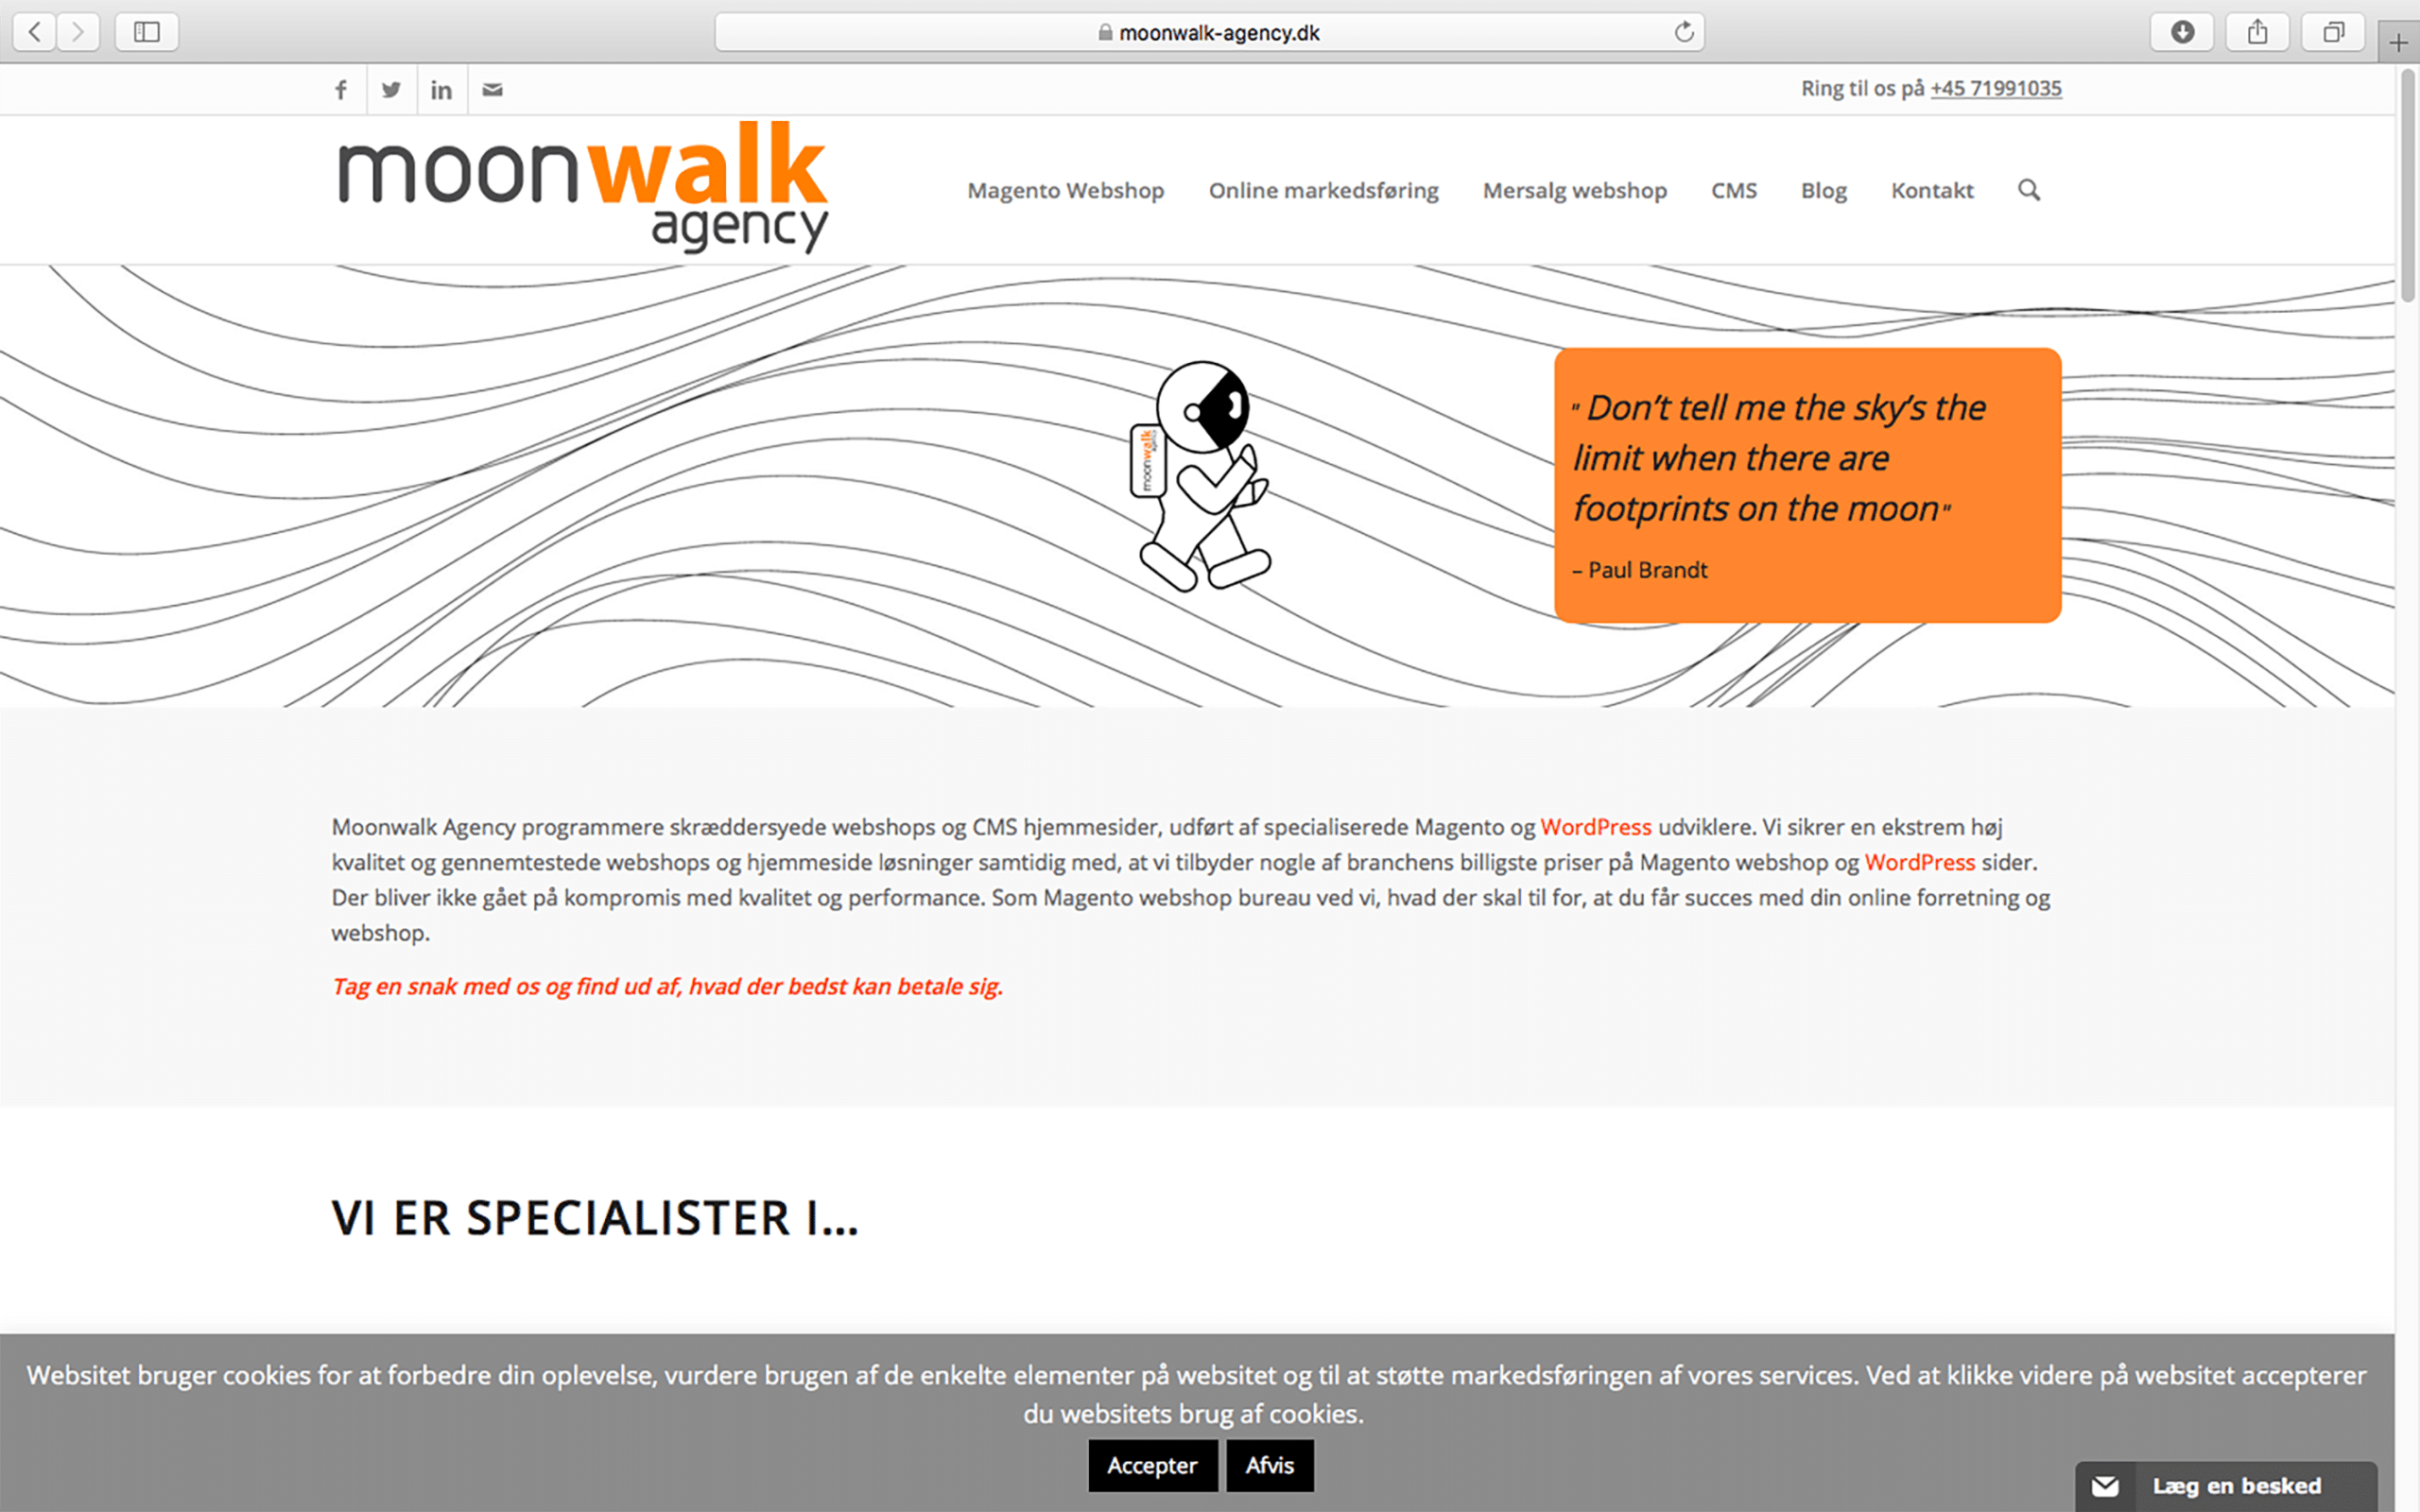 Moonwalk agency homepage